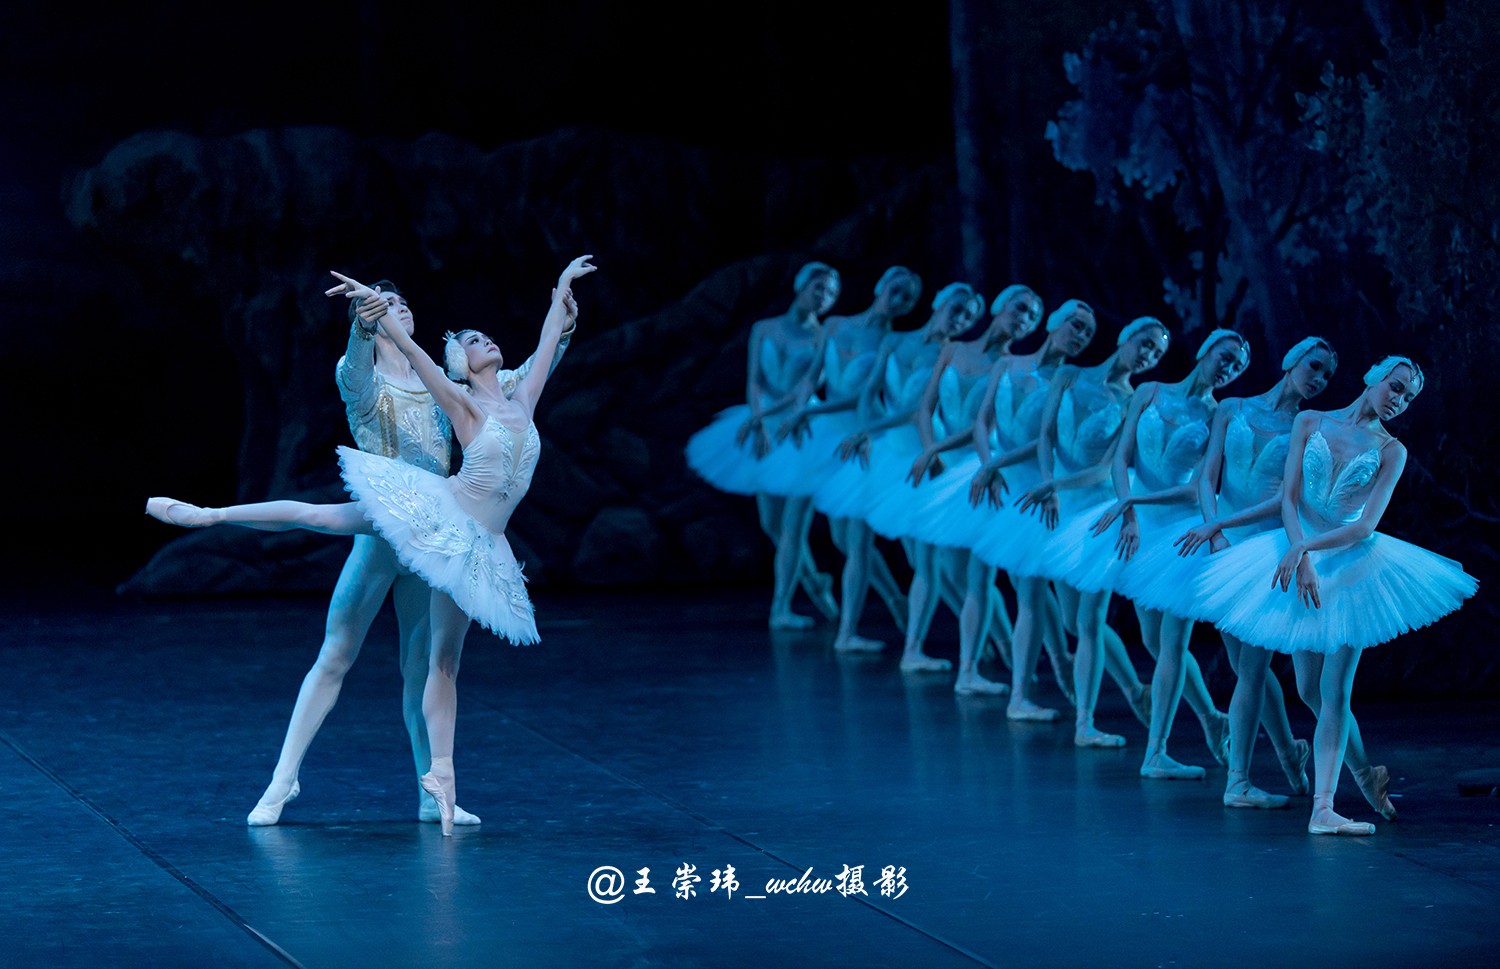 中央芭蕾舞团于 4月4日晚在天桥剧场三演浪漫芭蕾舞剧吉赛尔……